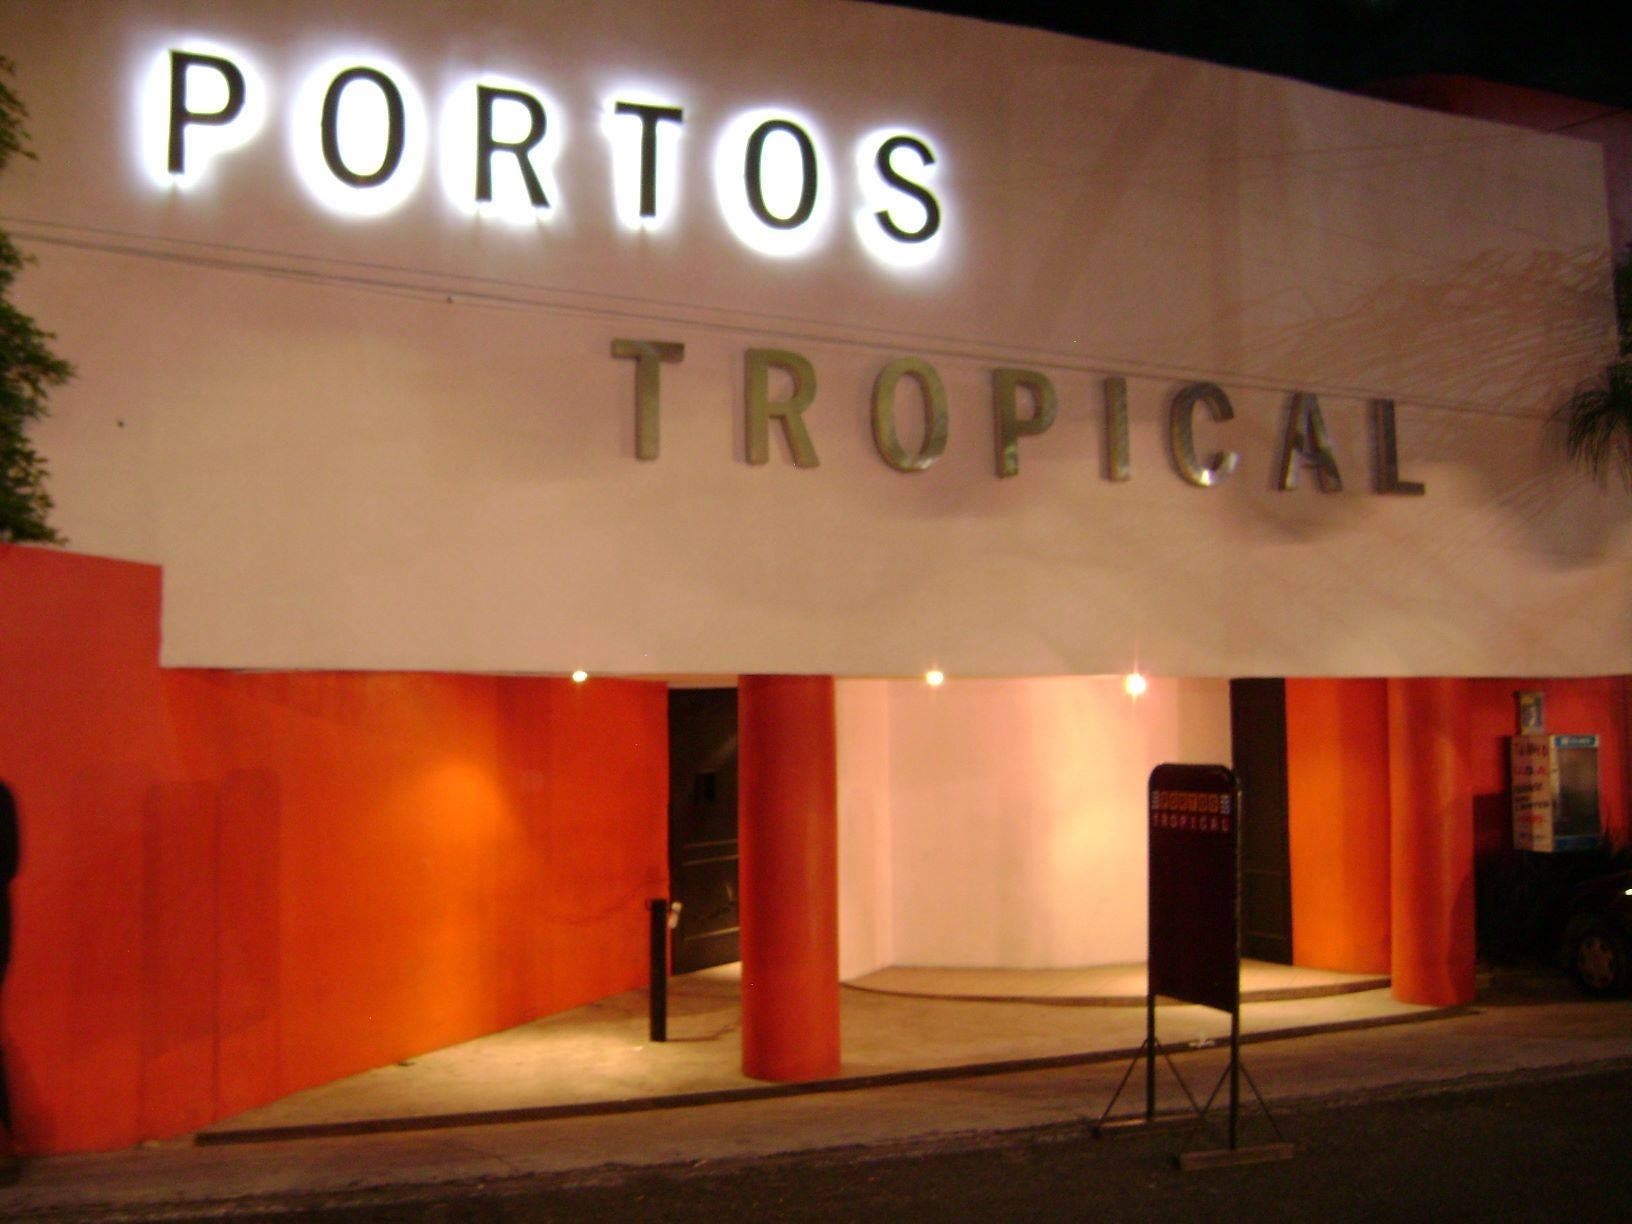 Entérate: El Portos Tropical regresa el 20 de marzo